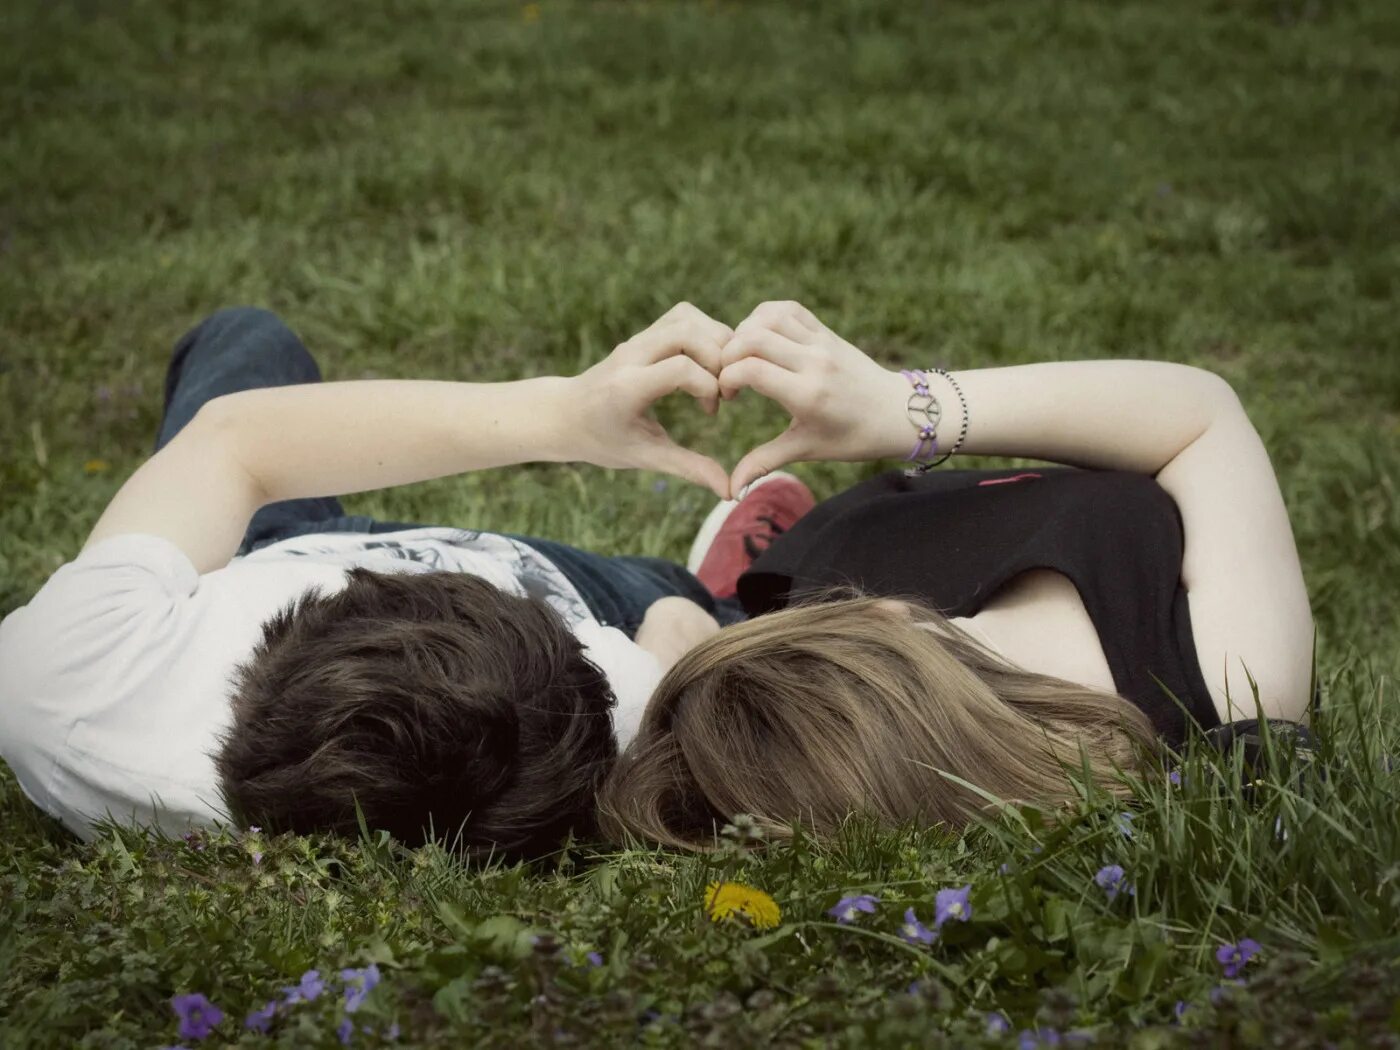 Красавчик любовь. Пара влюбленных. Влюбленные лежат на траве. Подростковая влюбленность. Картинки влюбленных.